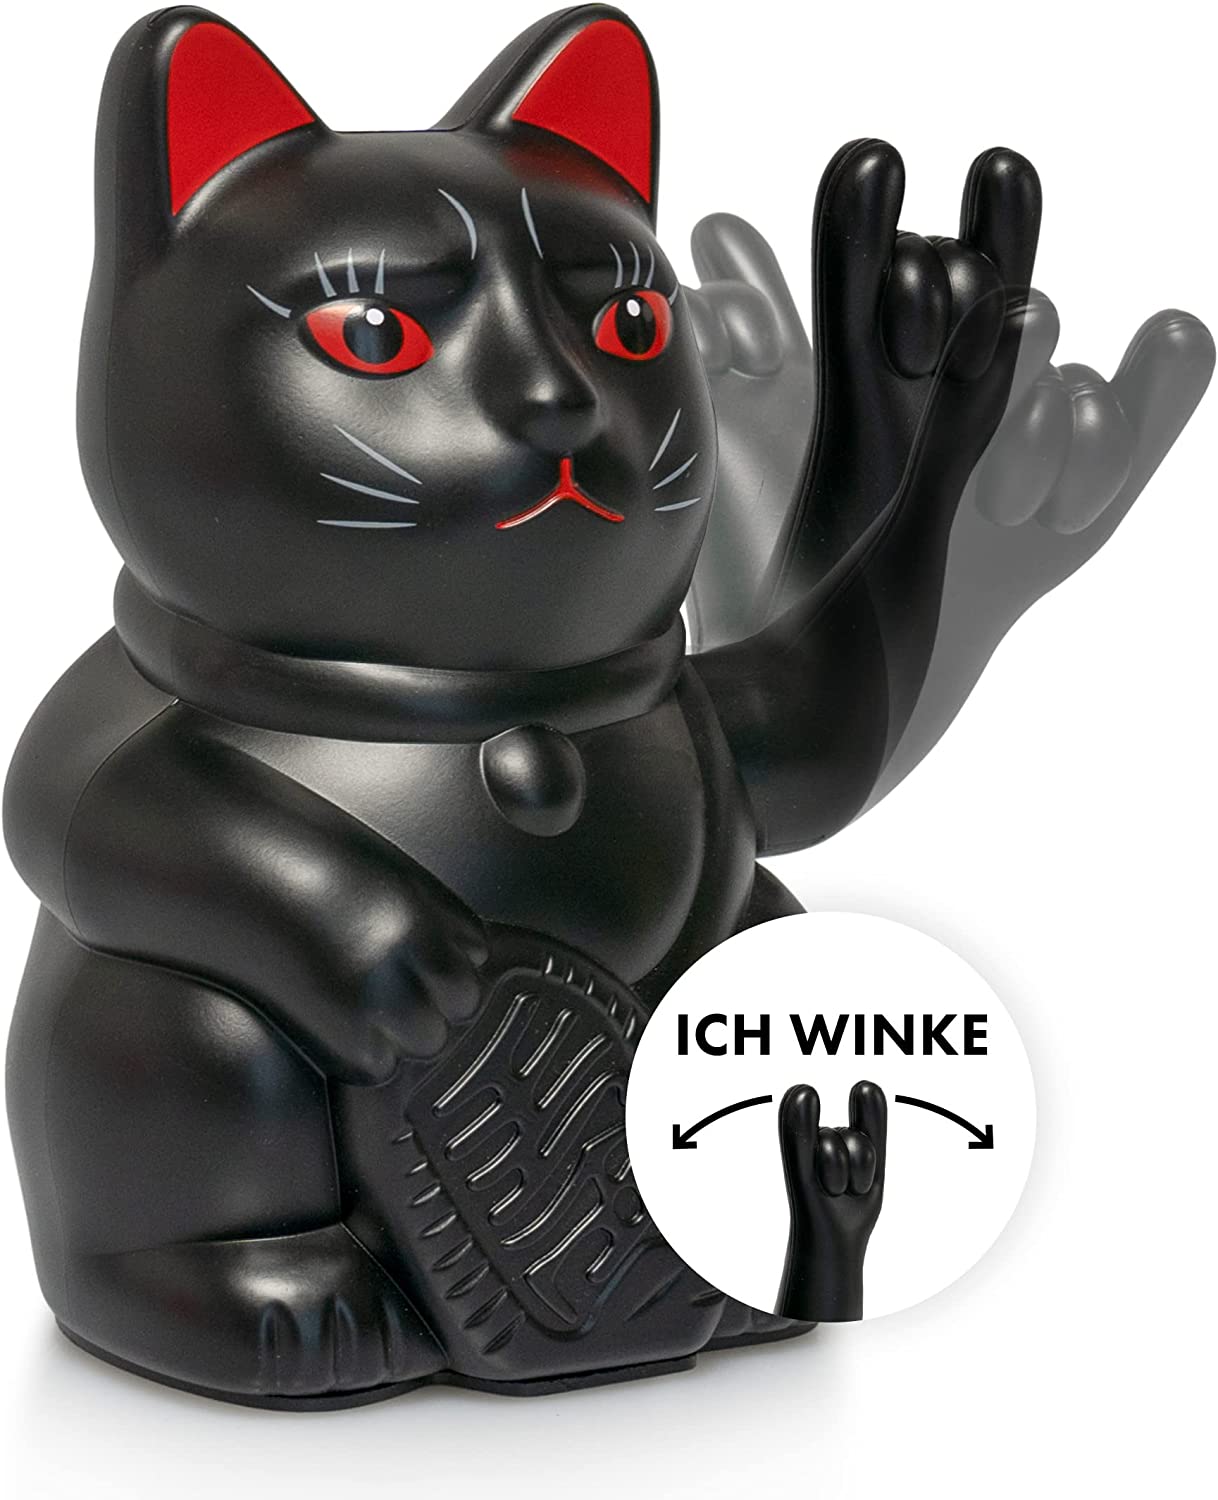 Winkekatze Lucky CAT - rockige, winkende Katze Neu Top